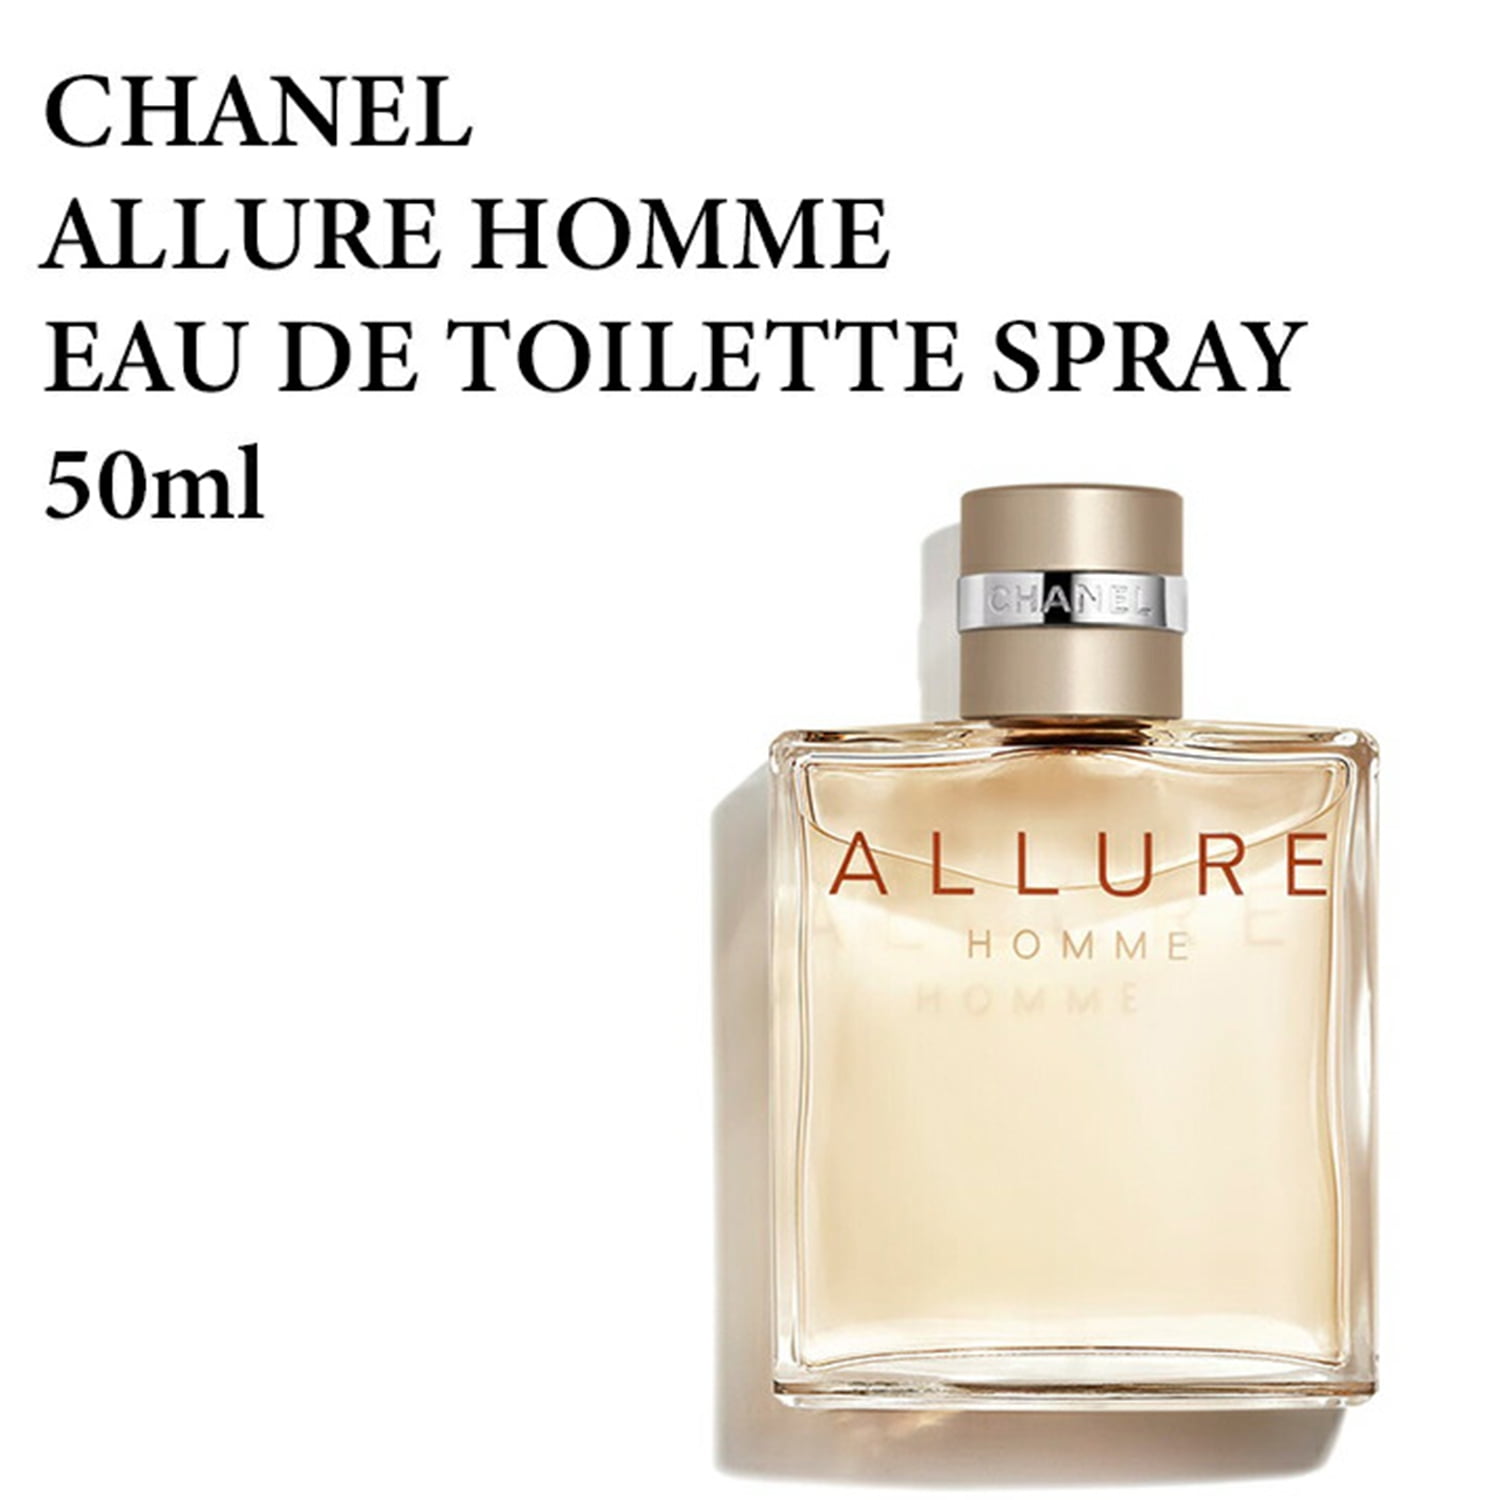 Thorns champion kompas Chanel Allure Homme Eau De Toilette Spary 50 ml / 1.7 fl. oz - Walmart.com